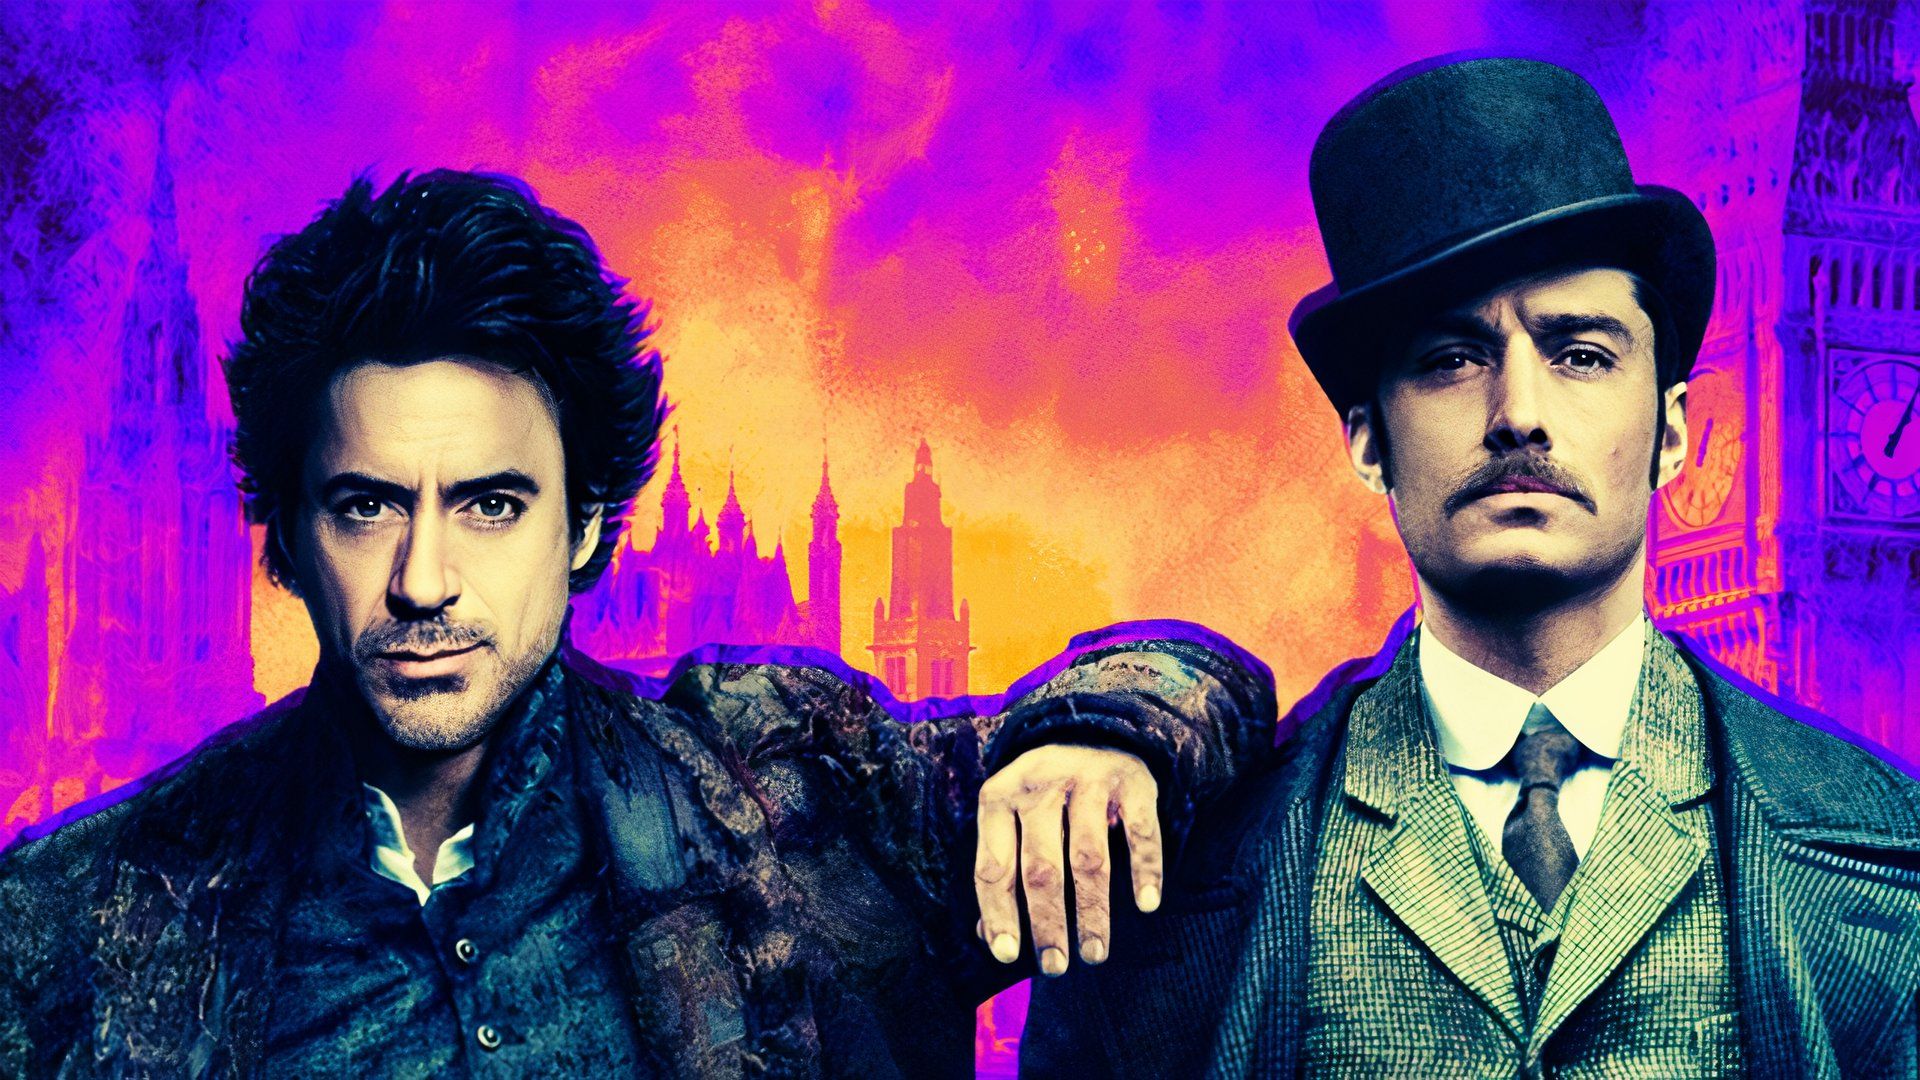 Robert Downey Jr. & Jude Law as Sherlock Holmes & John Watson in Sherlock Holmes